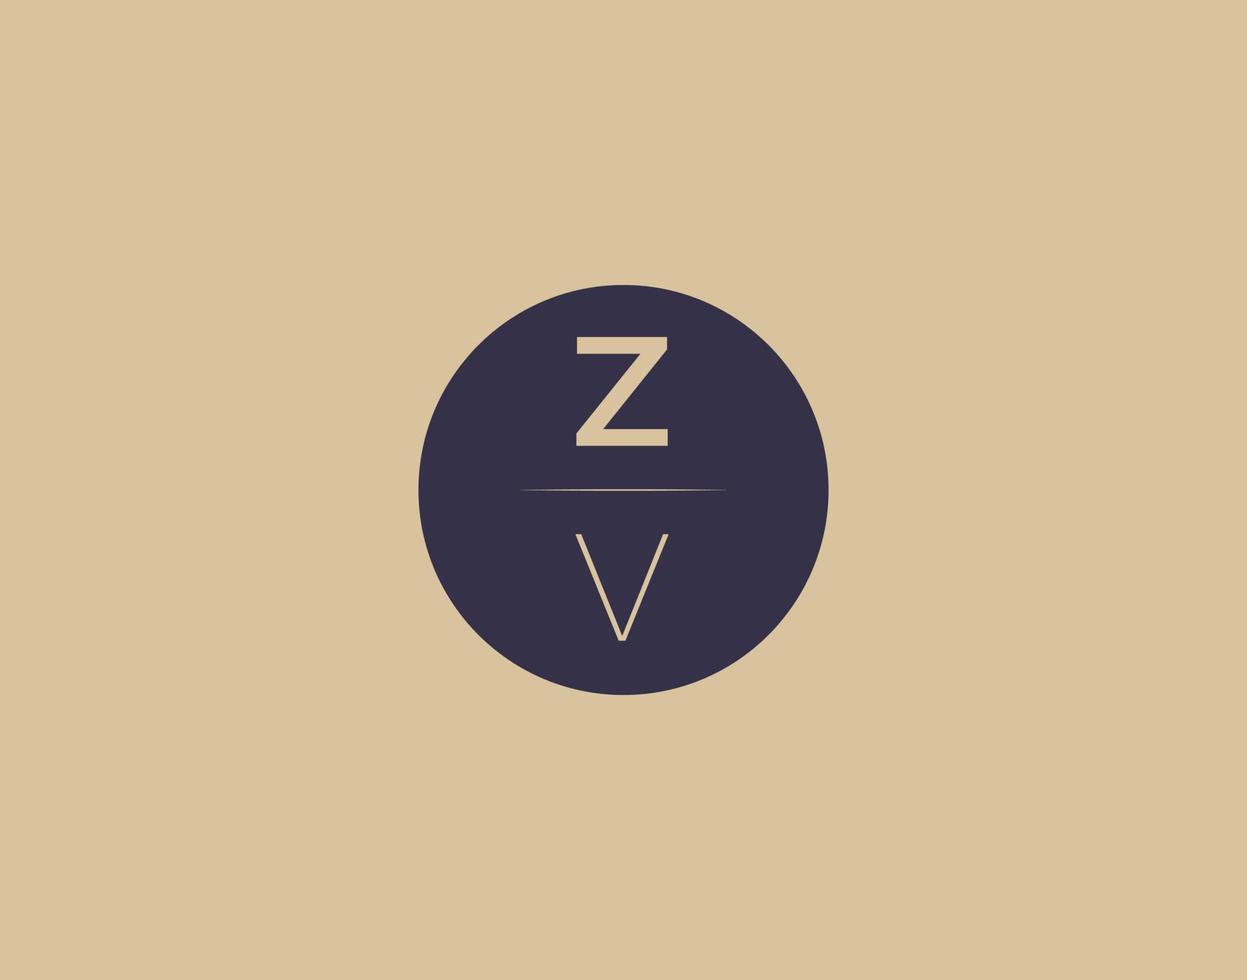 zv lettre moderne élégant logo design images vectorielles vecteur